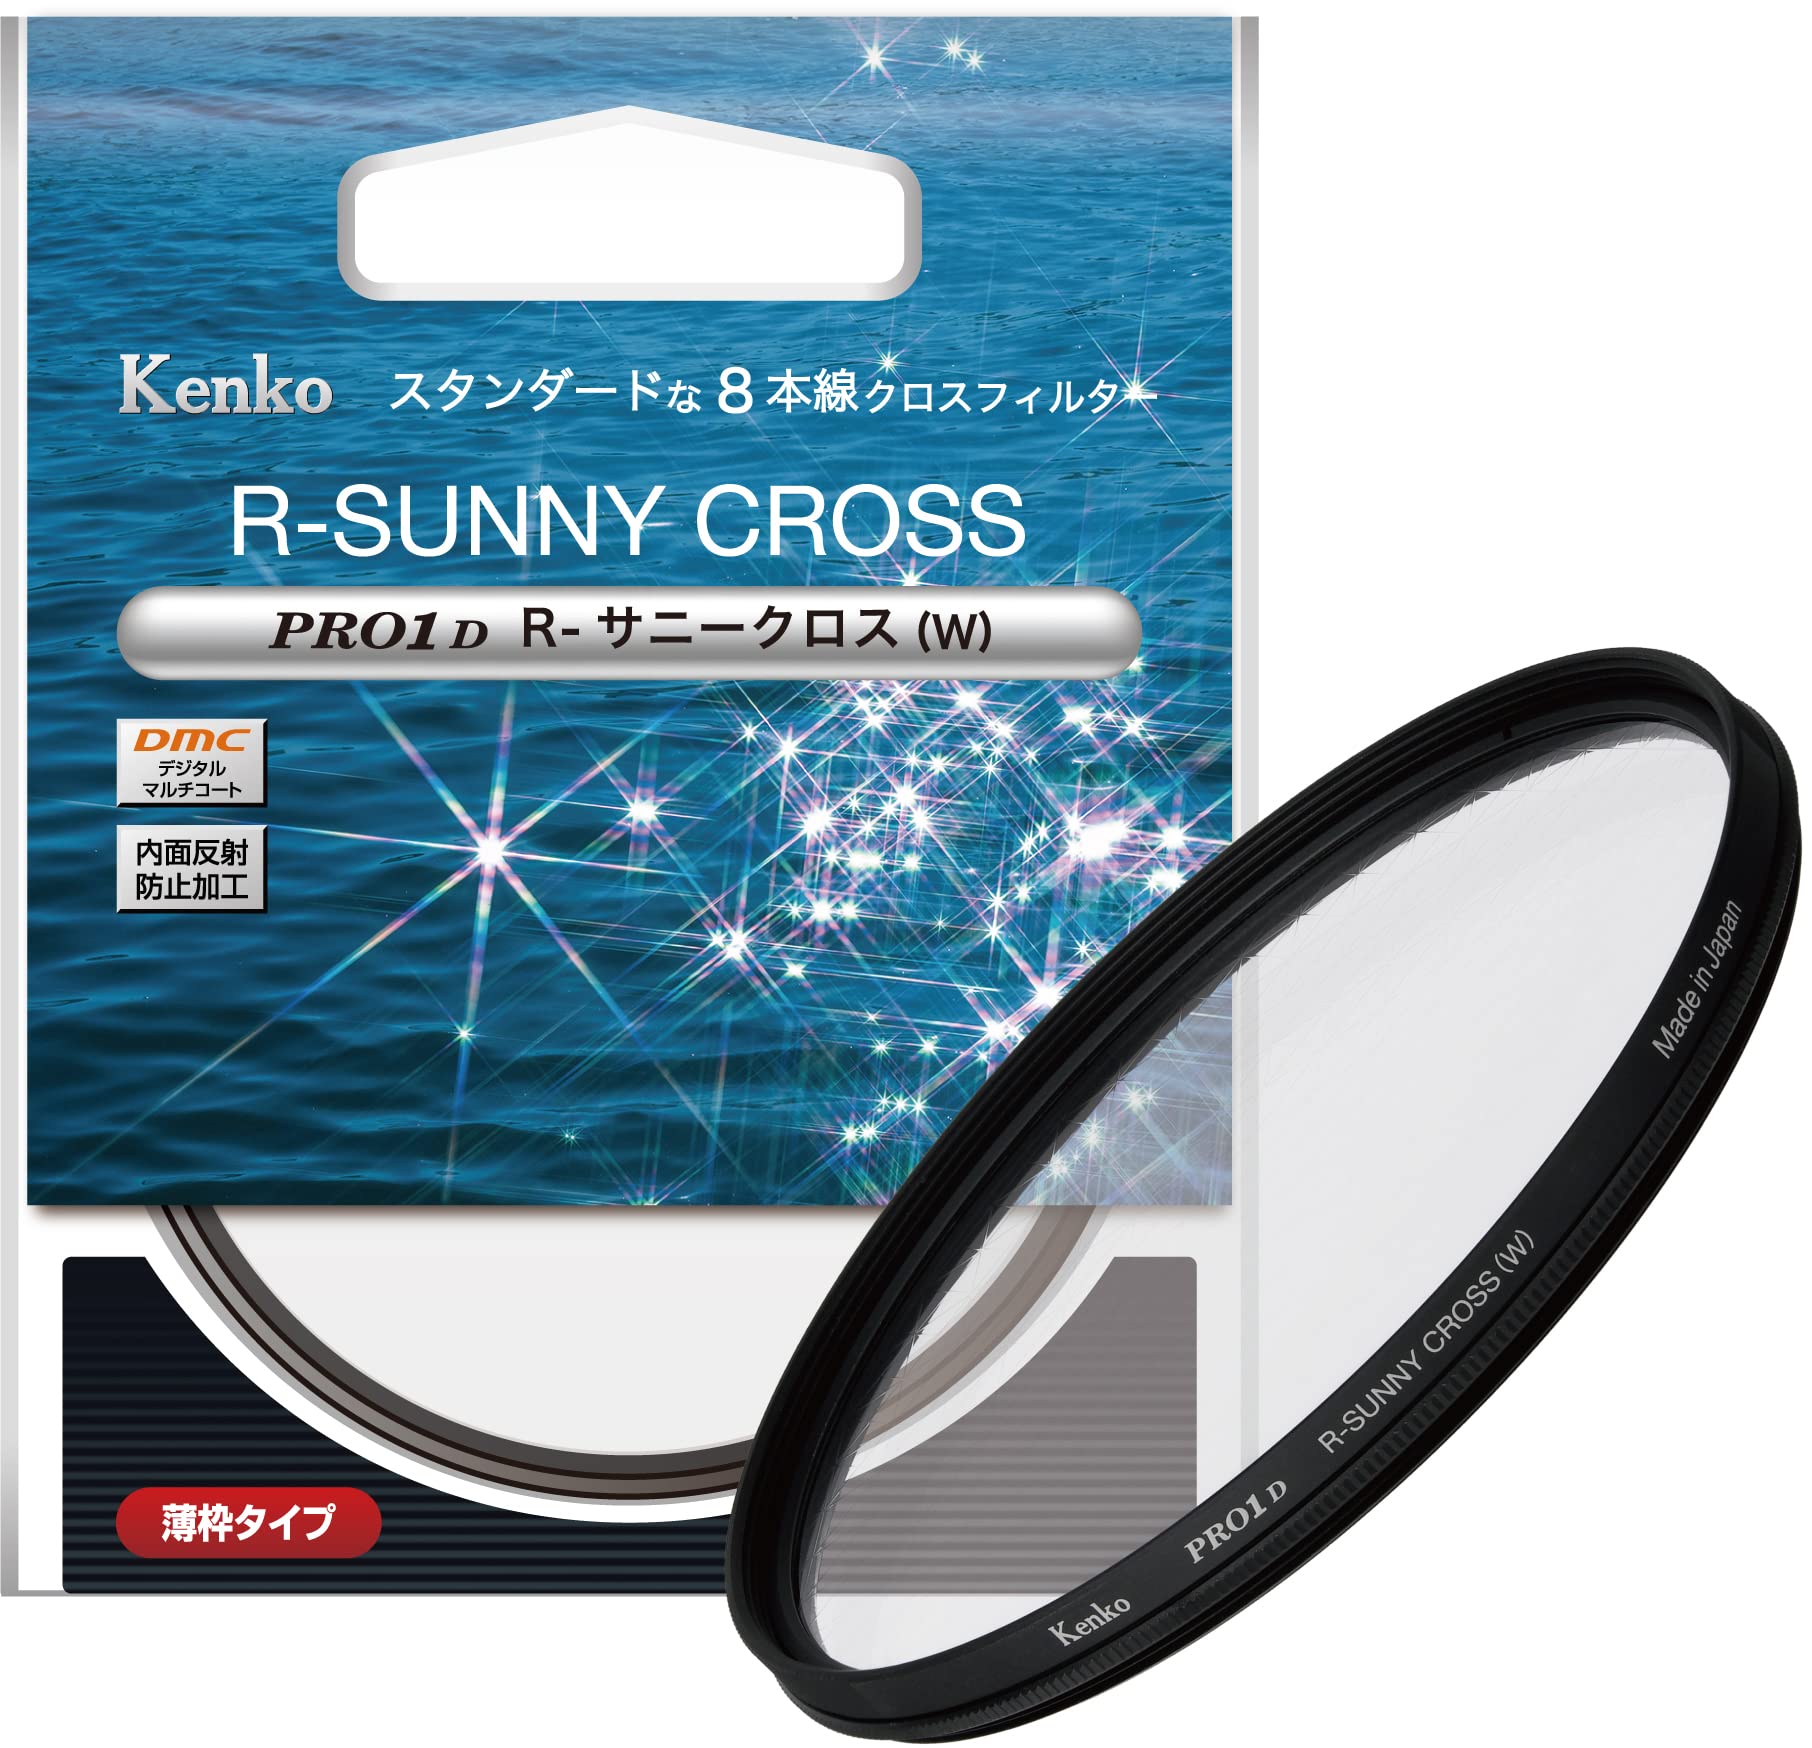 ケンコー(Kenko) クロスフィルター PRO1D R-サニークロス (W) 72mm 8本クロス効果 夜景・イルミネーション・光の演出に 薄枠 825433 特別